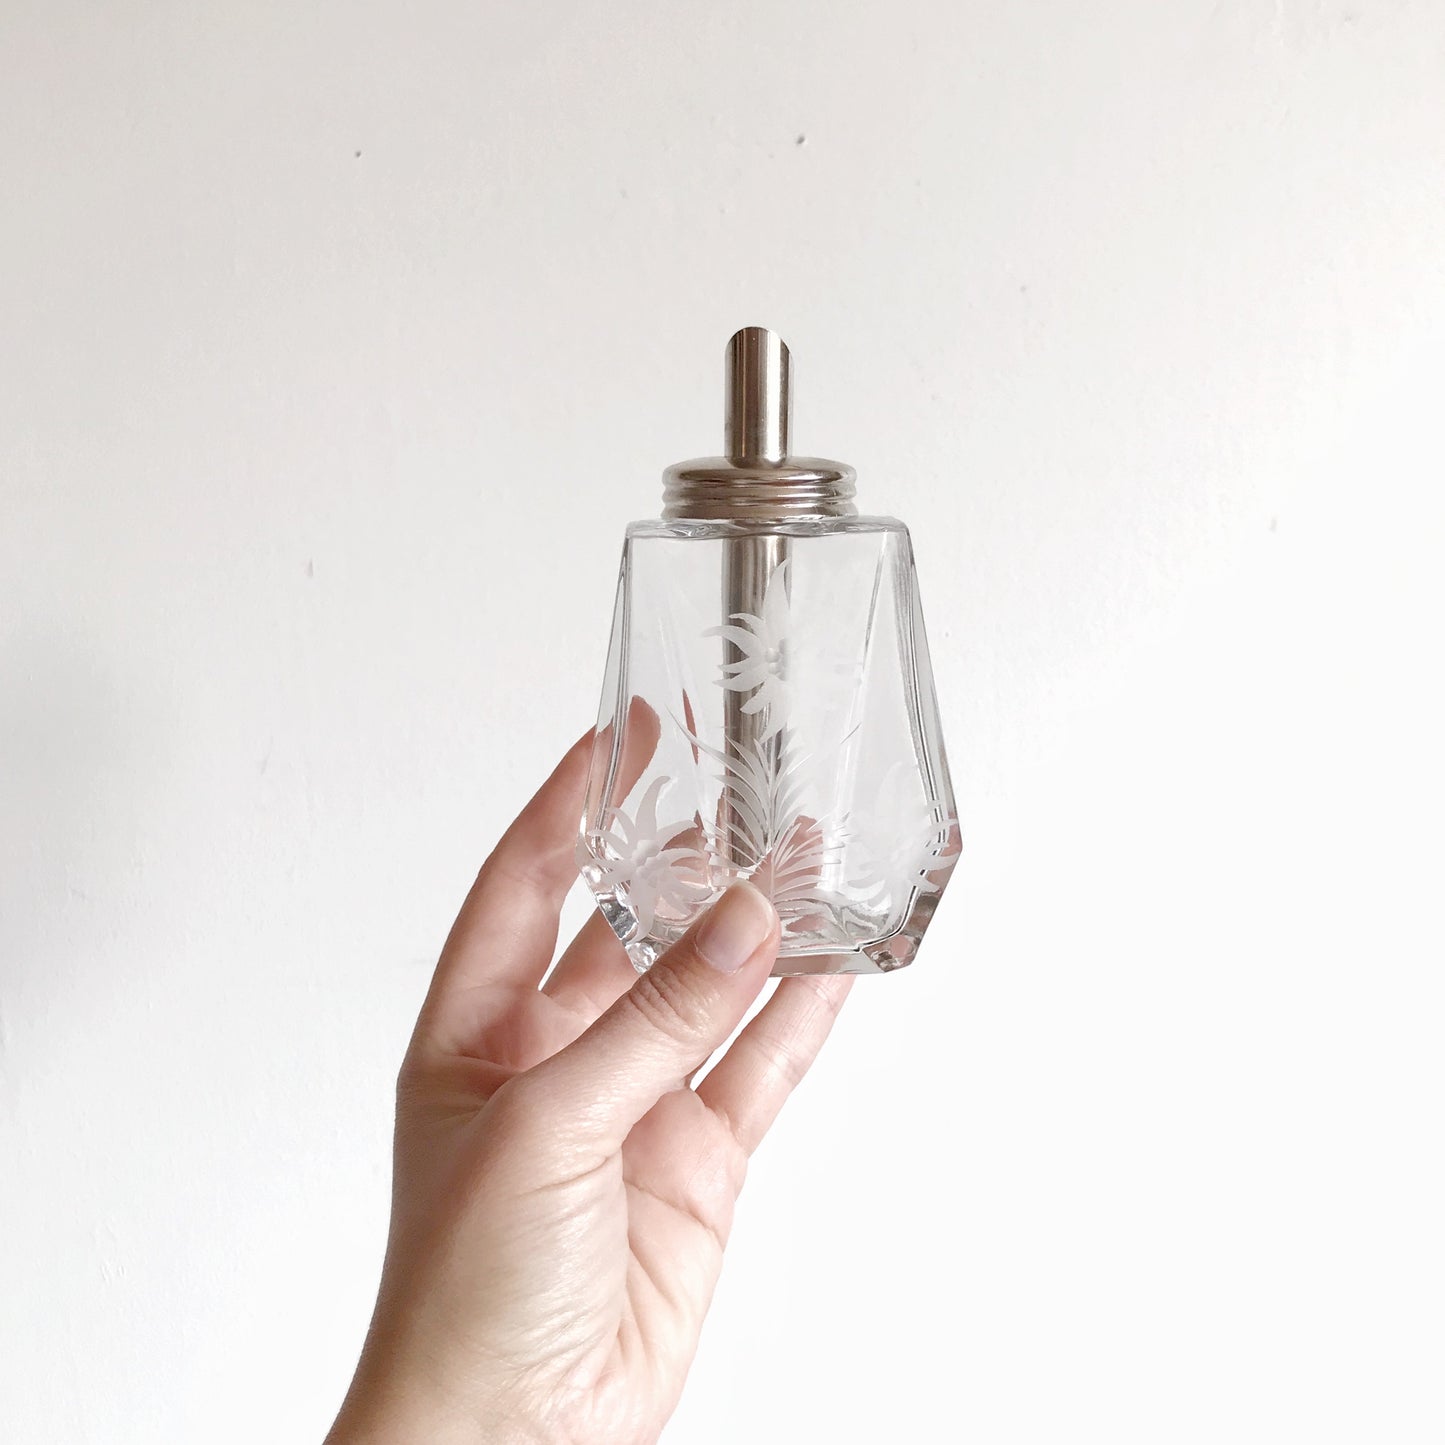 Vintage Etched Glass Bottle / Decanter